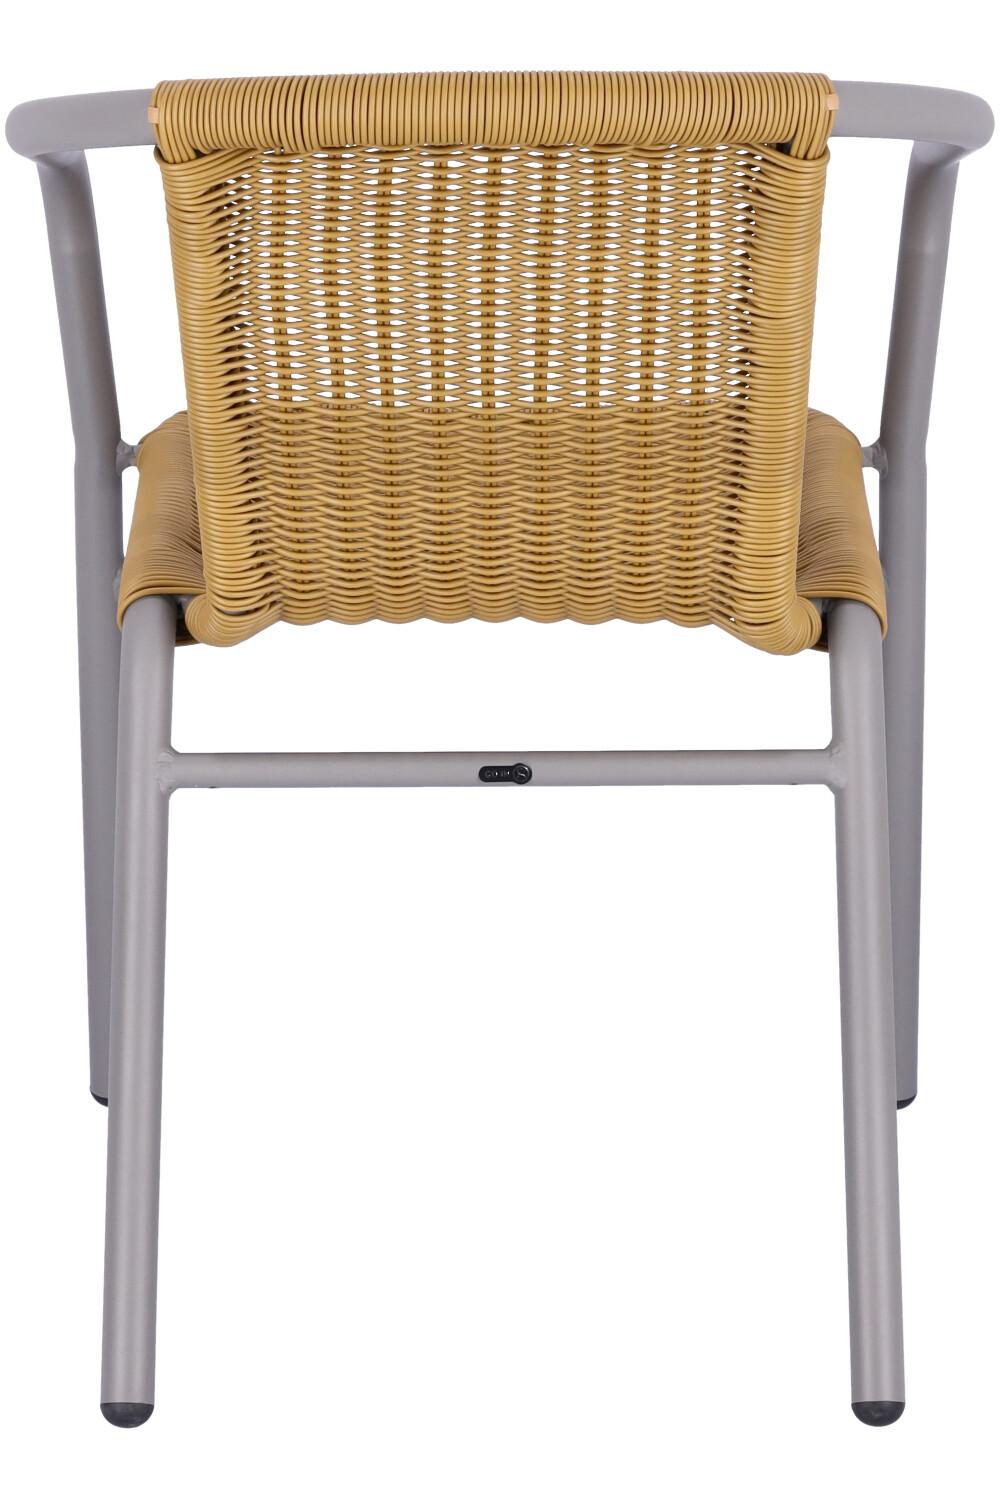 Abbildung arm chair Enriko Rückansicht